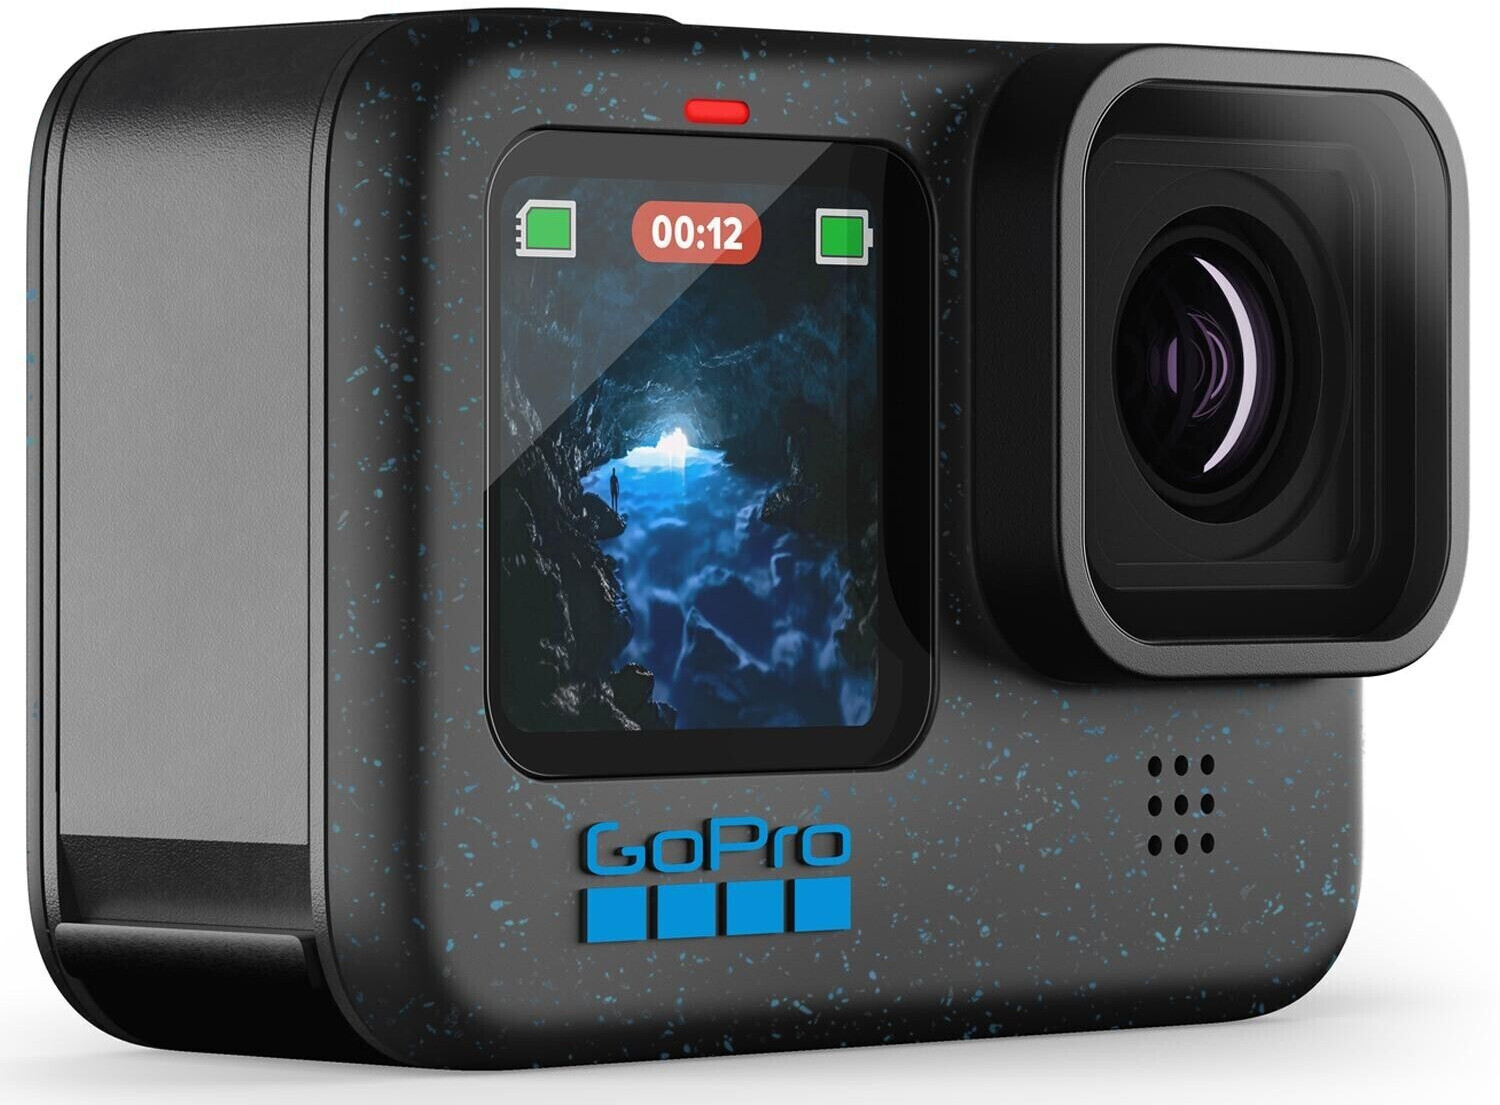 GoPro HERO12 Black - Caméra d'action étanche avec vidéo Ultra HD 5.3K60,  Photos 27MP, HDR, capteur d'image 1/1.9, Diffusion en Direct, Webcam